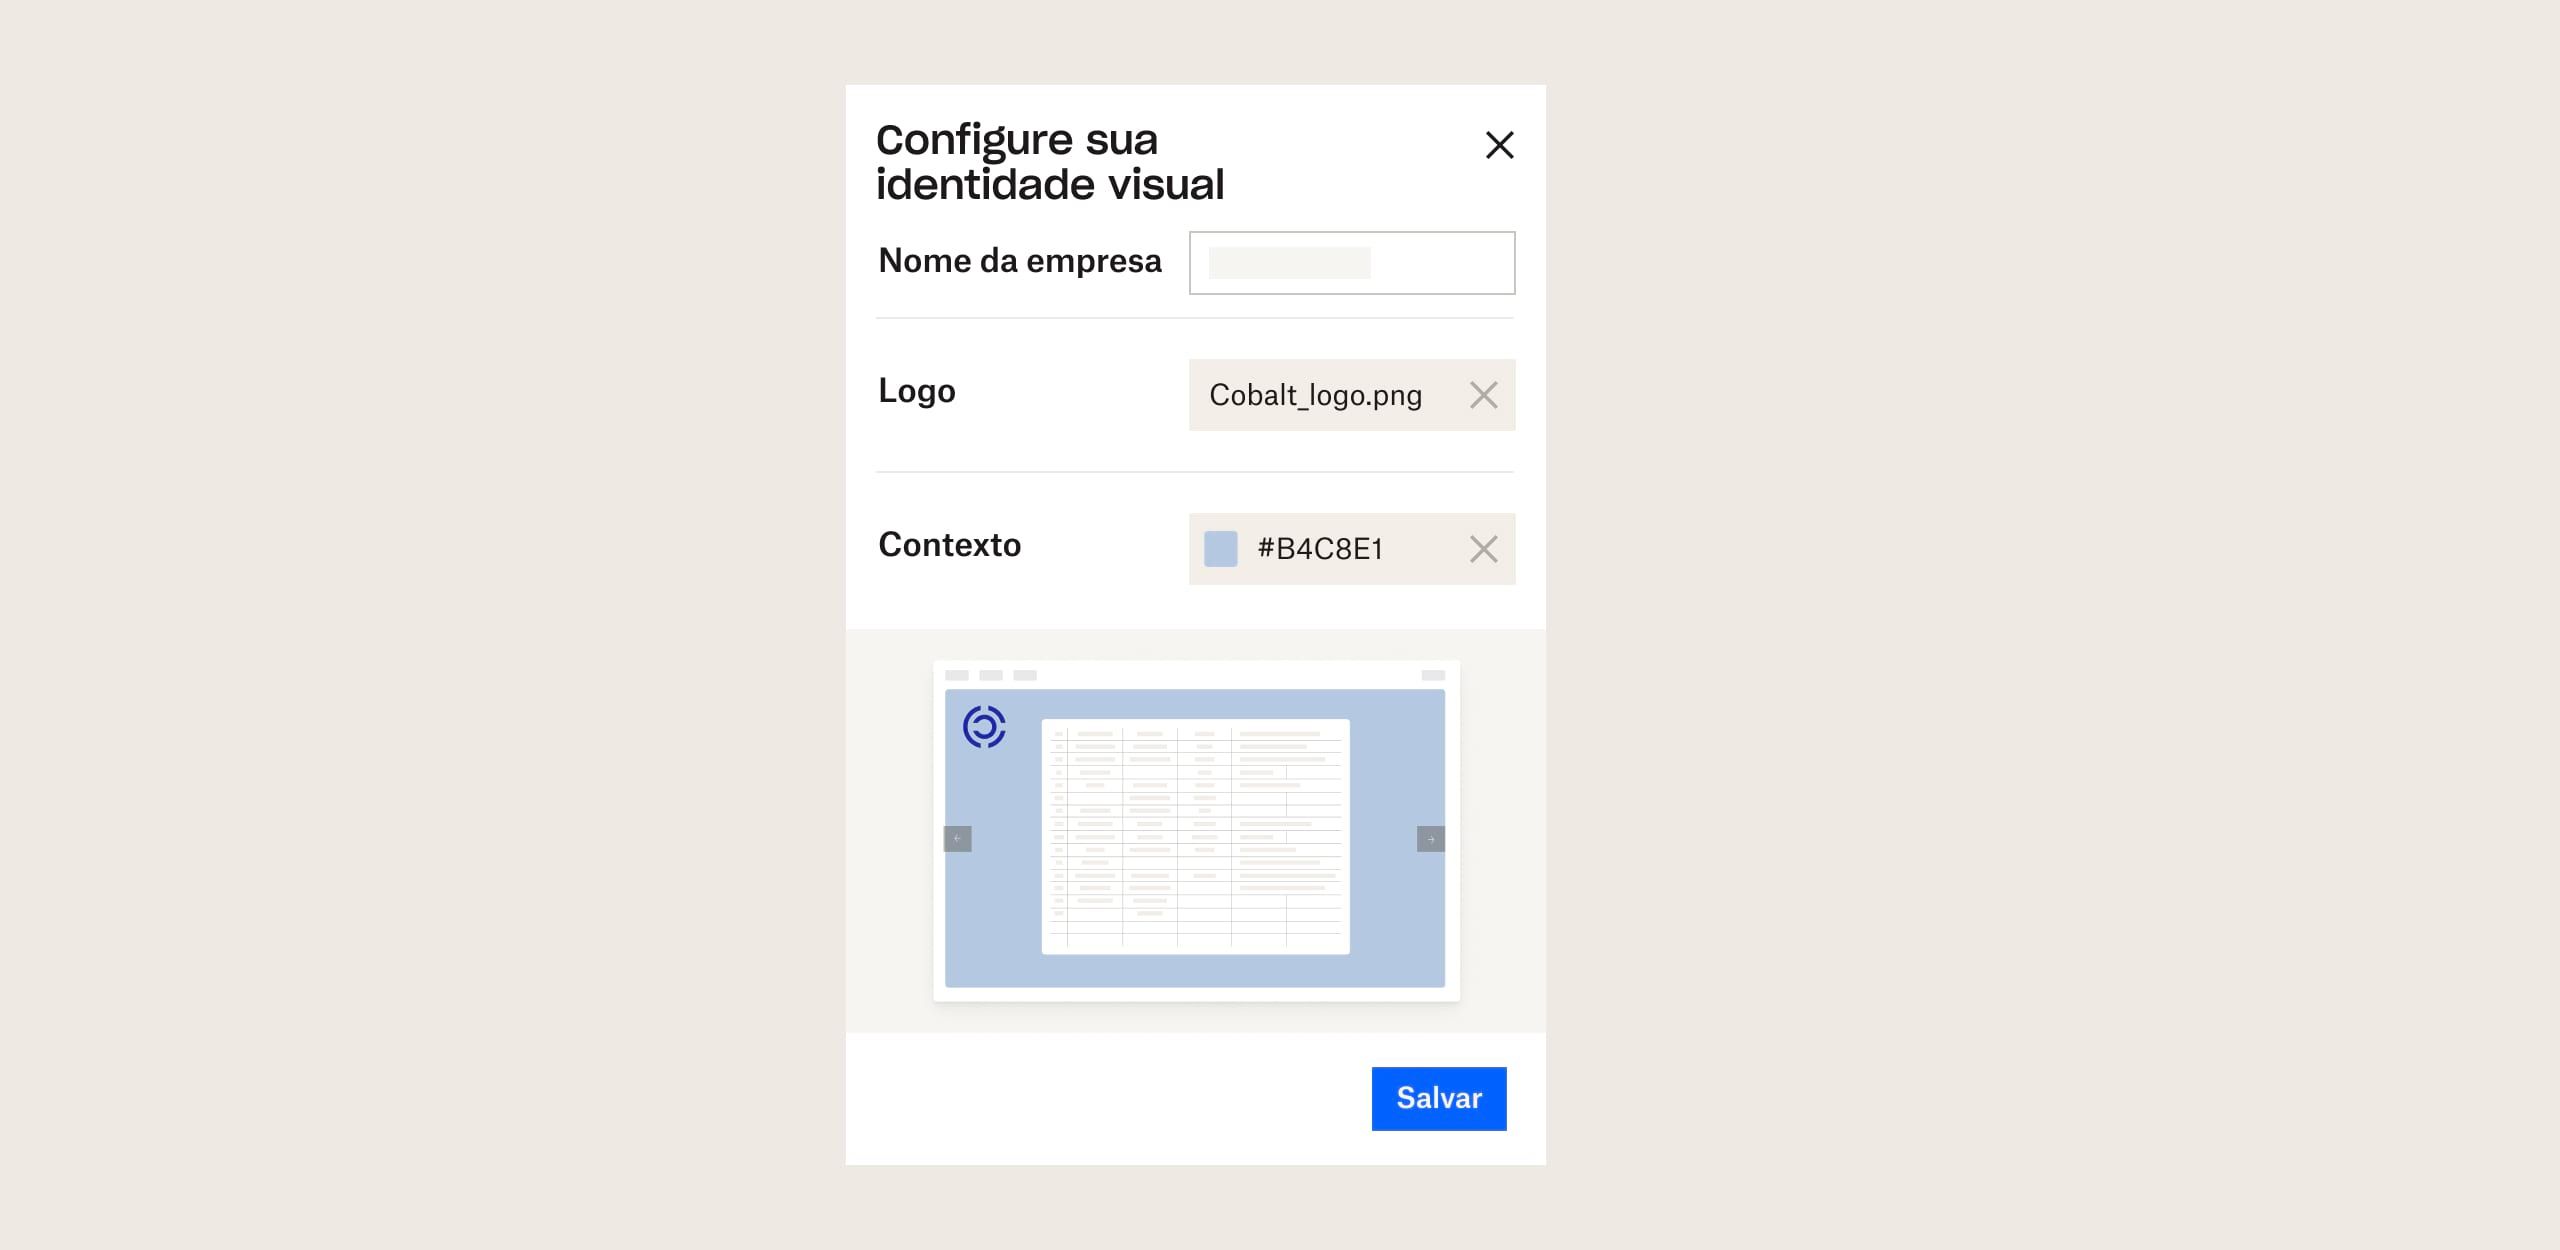 Um usuário visualiza mudanças no compartilhamento com identidade de marca de arquivos no Dropbox